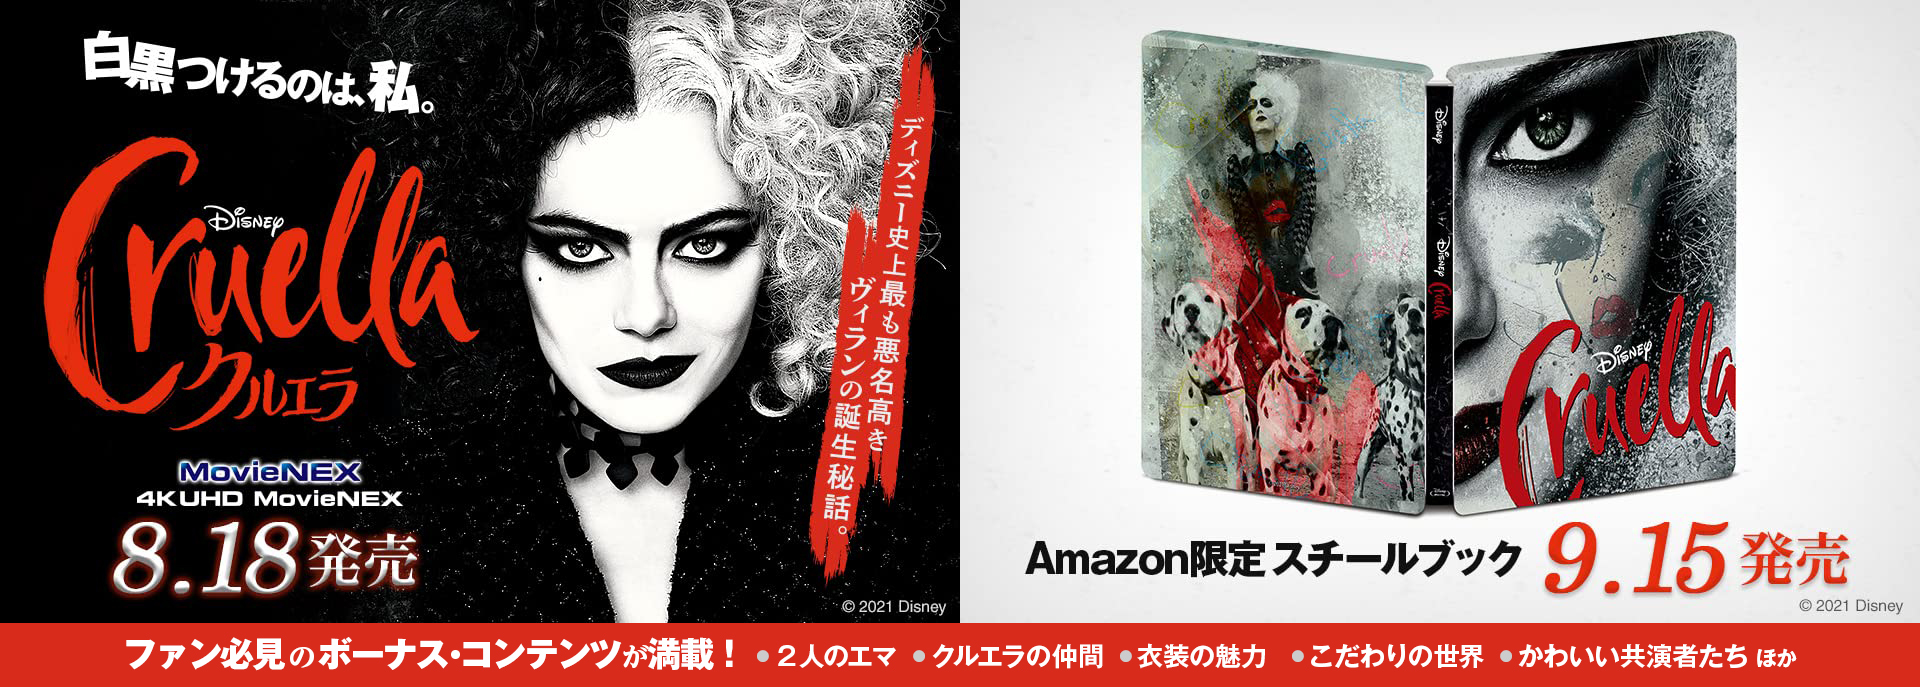 クルエラ 4K UHD MovieNEX スチールブック Cruella Japan steelbook